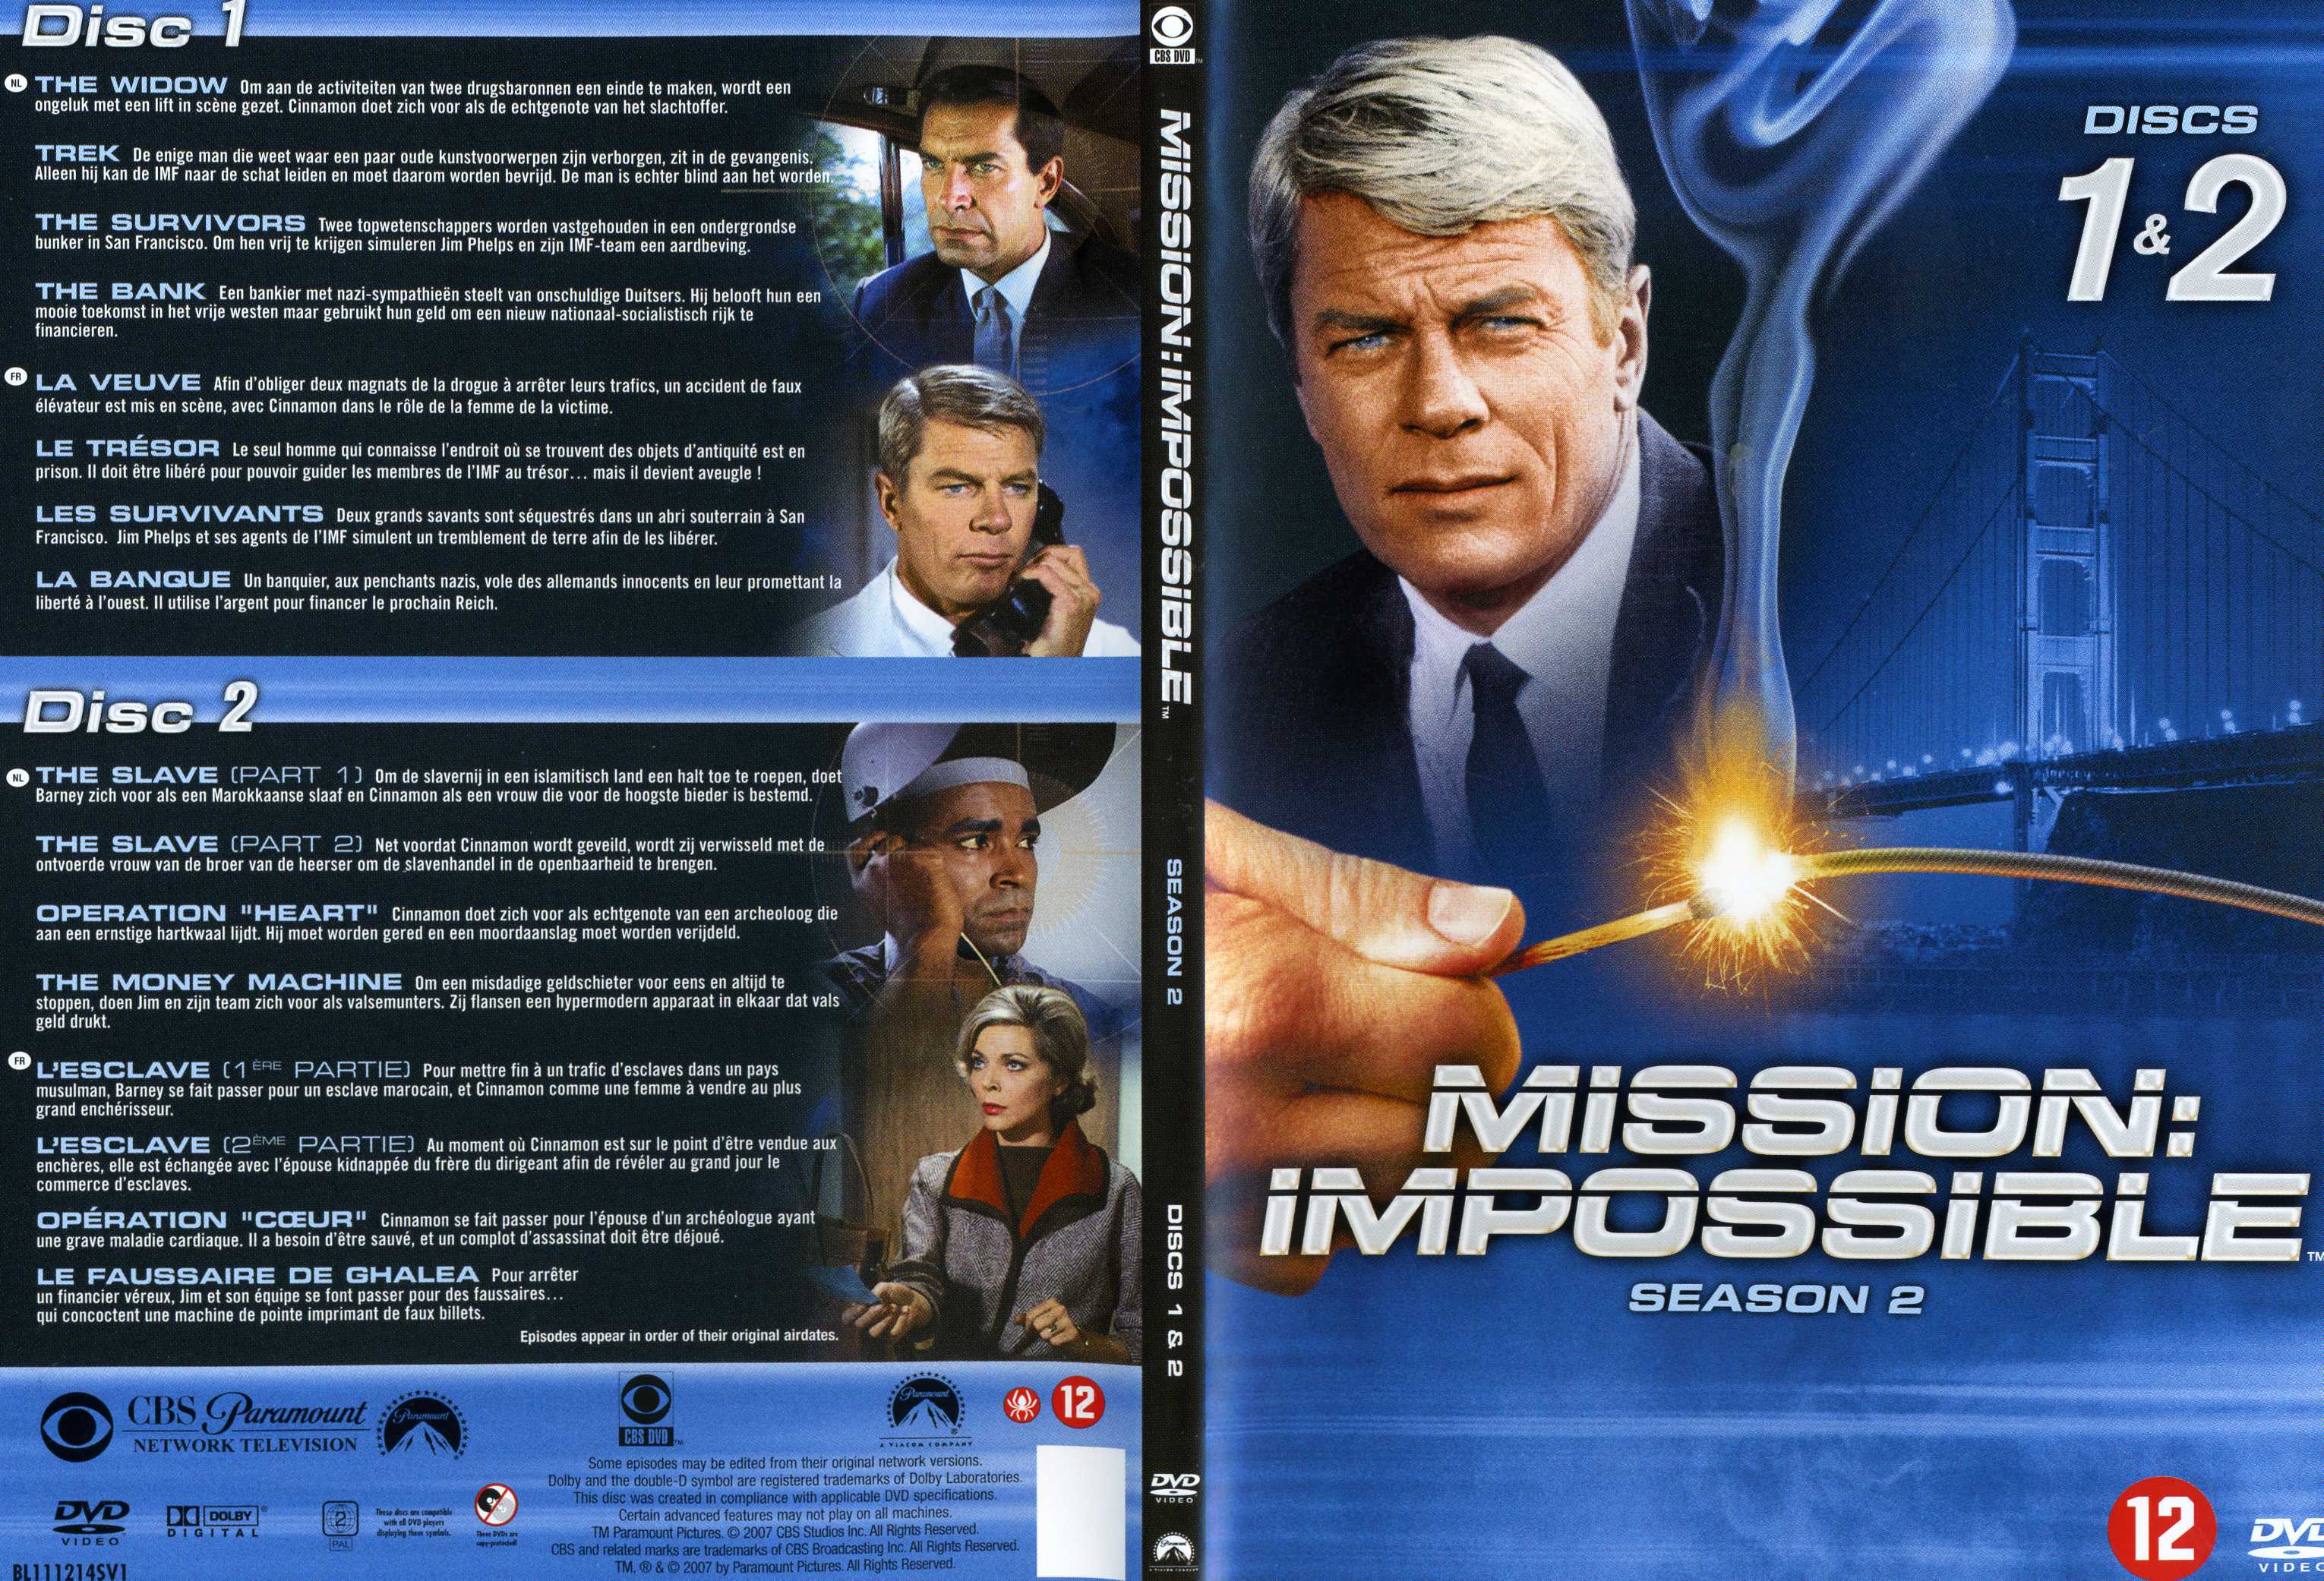 Jaquette DVD Mission impossible Saison 2 vol 1